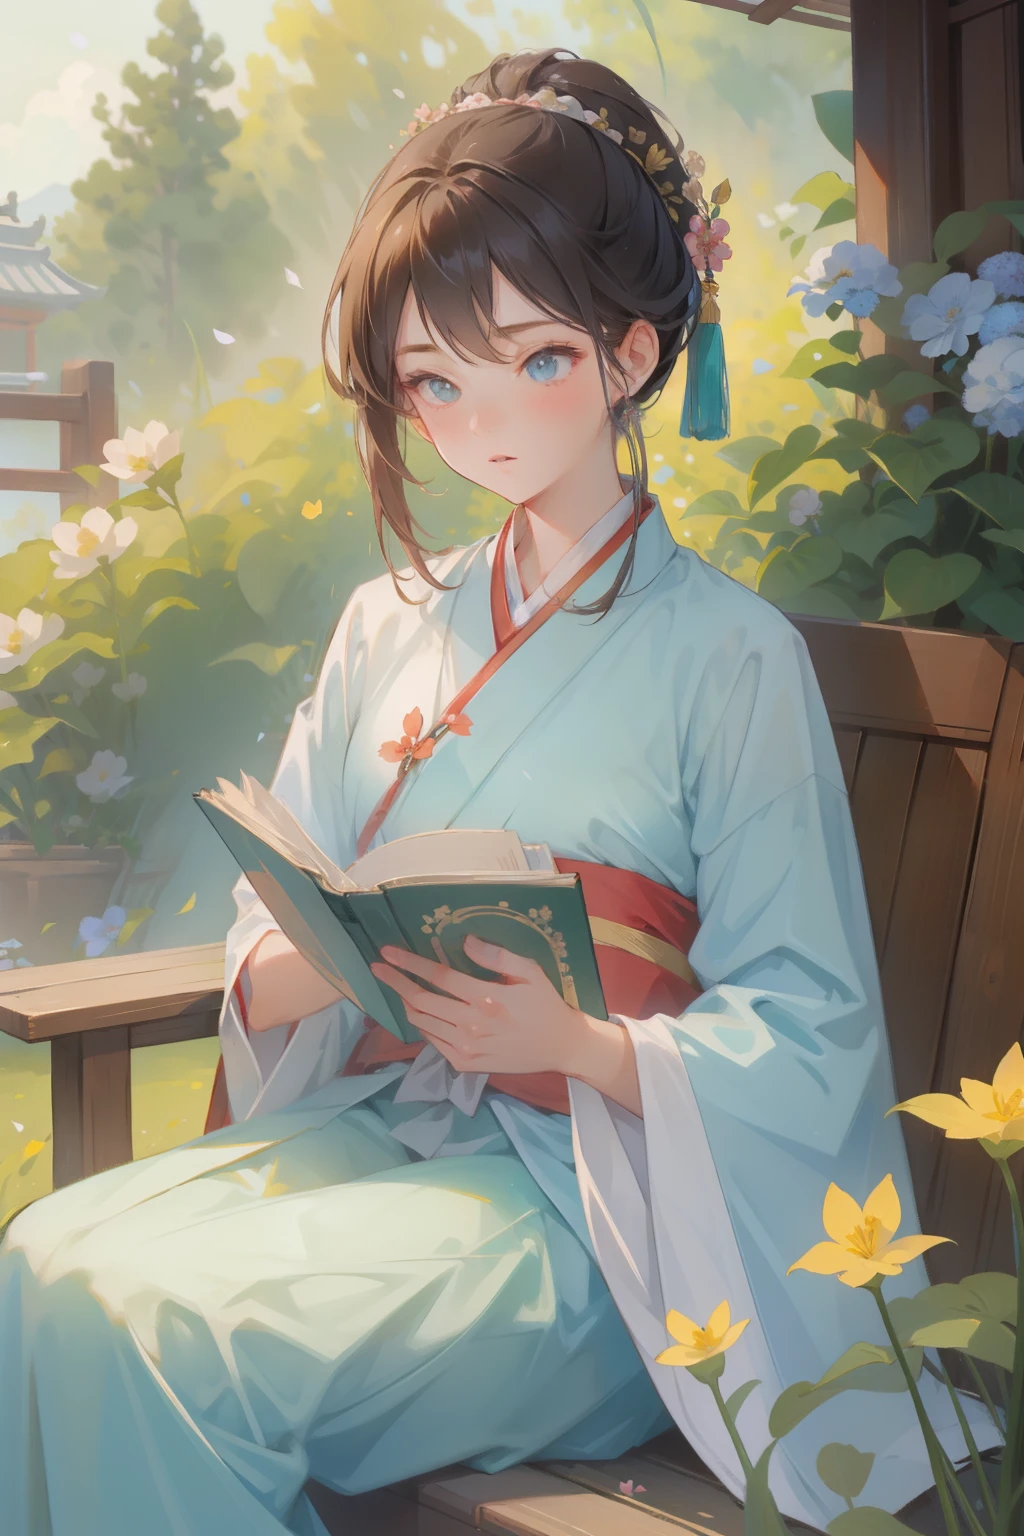 (шедевр), (Лучшее качество), 1 девушка, 20 лет, Ханьфу, Китайская традиционная одежда, Сидя, читая книгу, в саду, весна, цветы